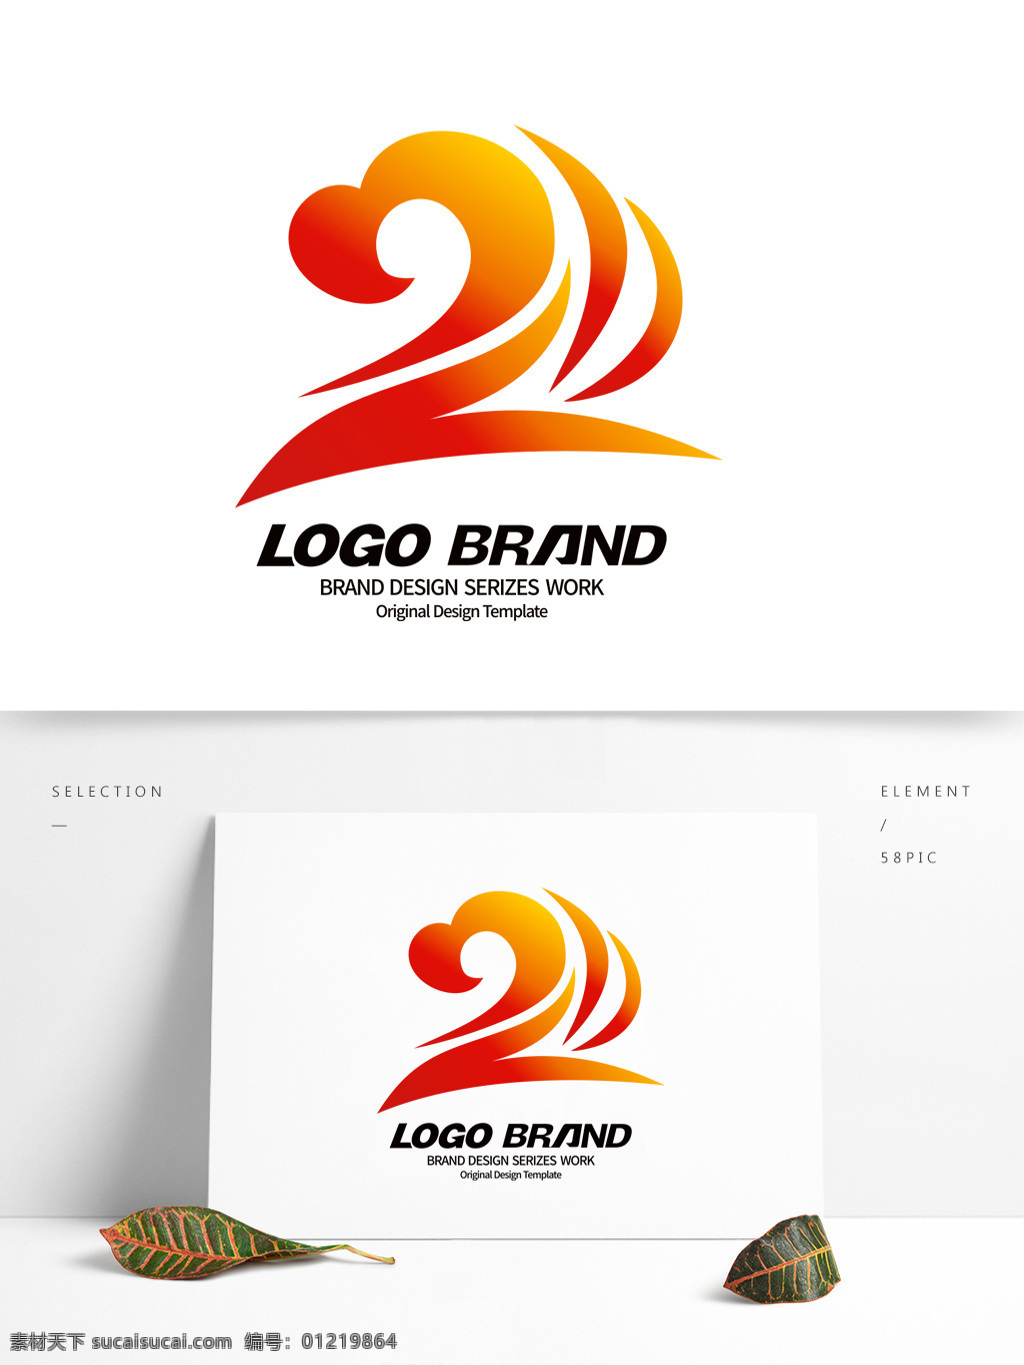 创意 红 黄 祥云 z 字母 公司 logo 标志设计 金色logo 标志 公司标志设计 企业 会徽标志设计 企业标志设计